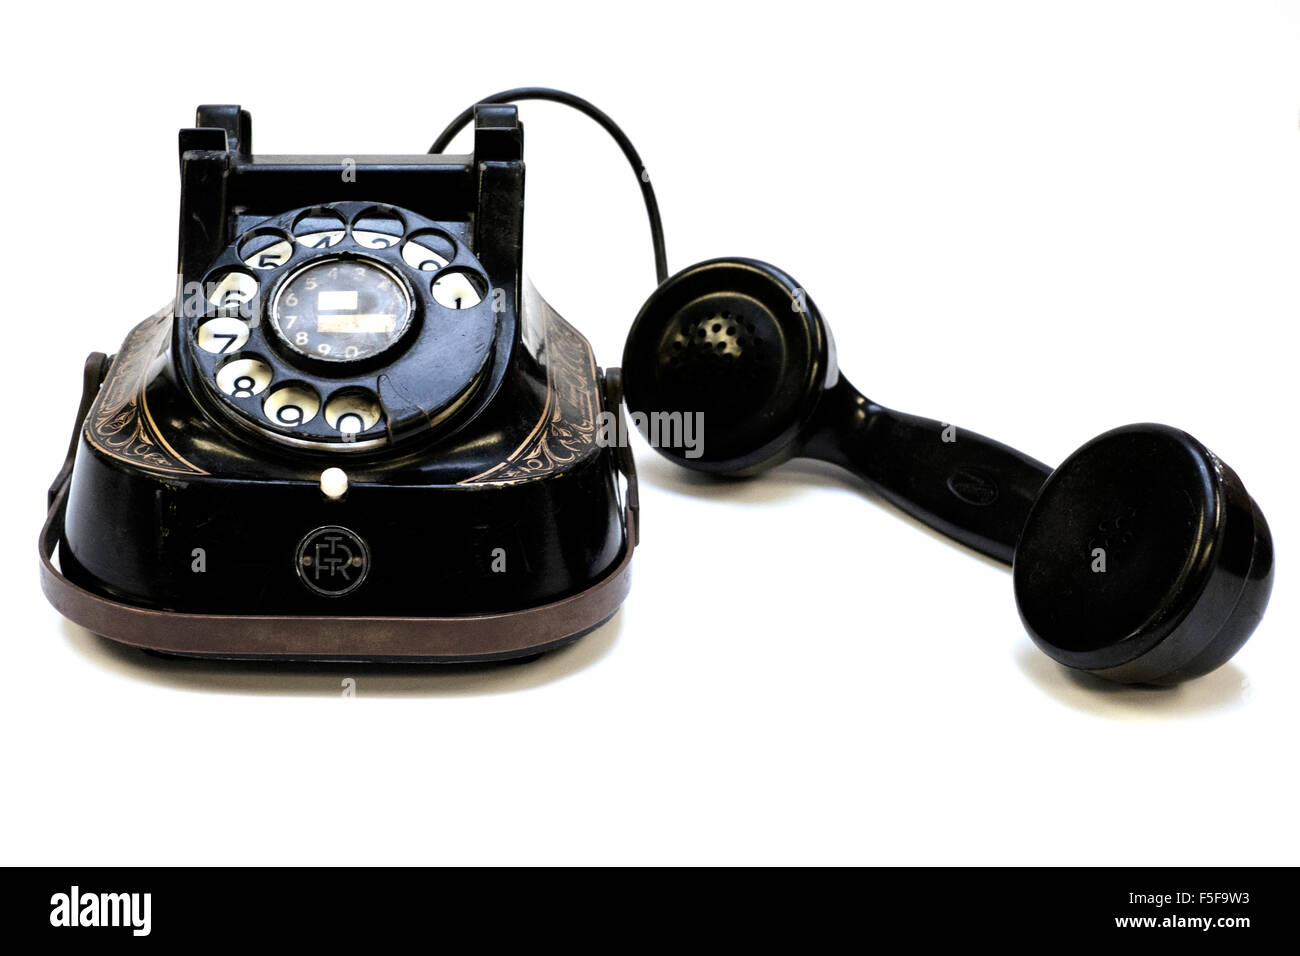 Bell original téléphone à cadran rotatif en bakélite des Années 1940 Années 1950 sur fond blanc Banque D'Images